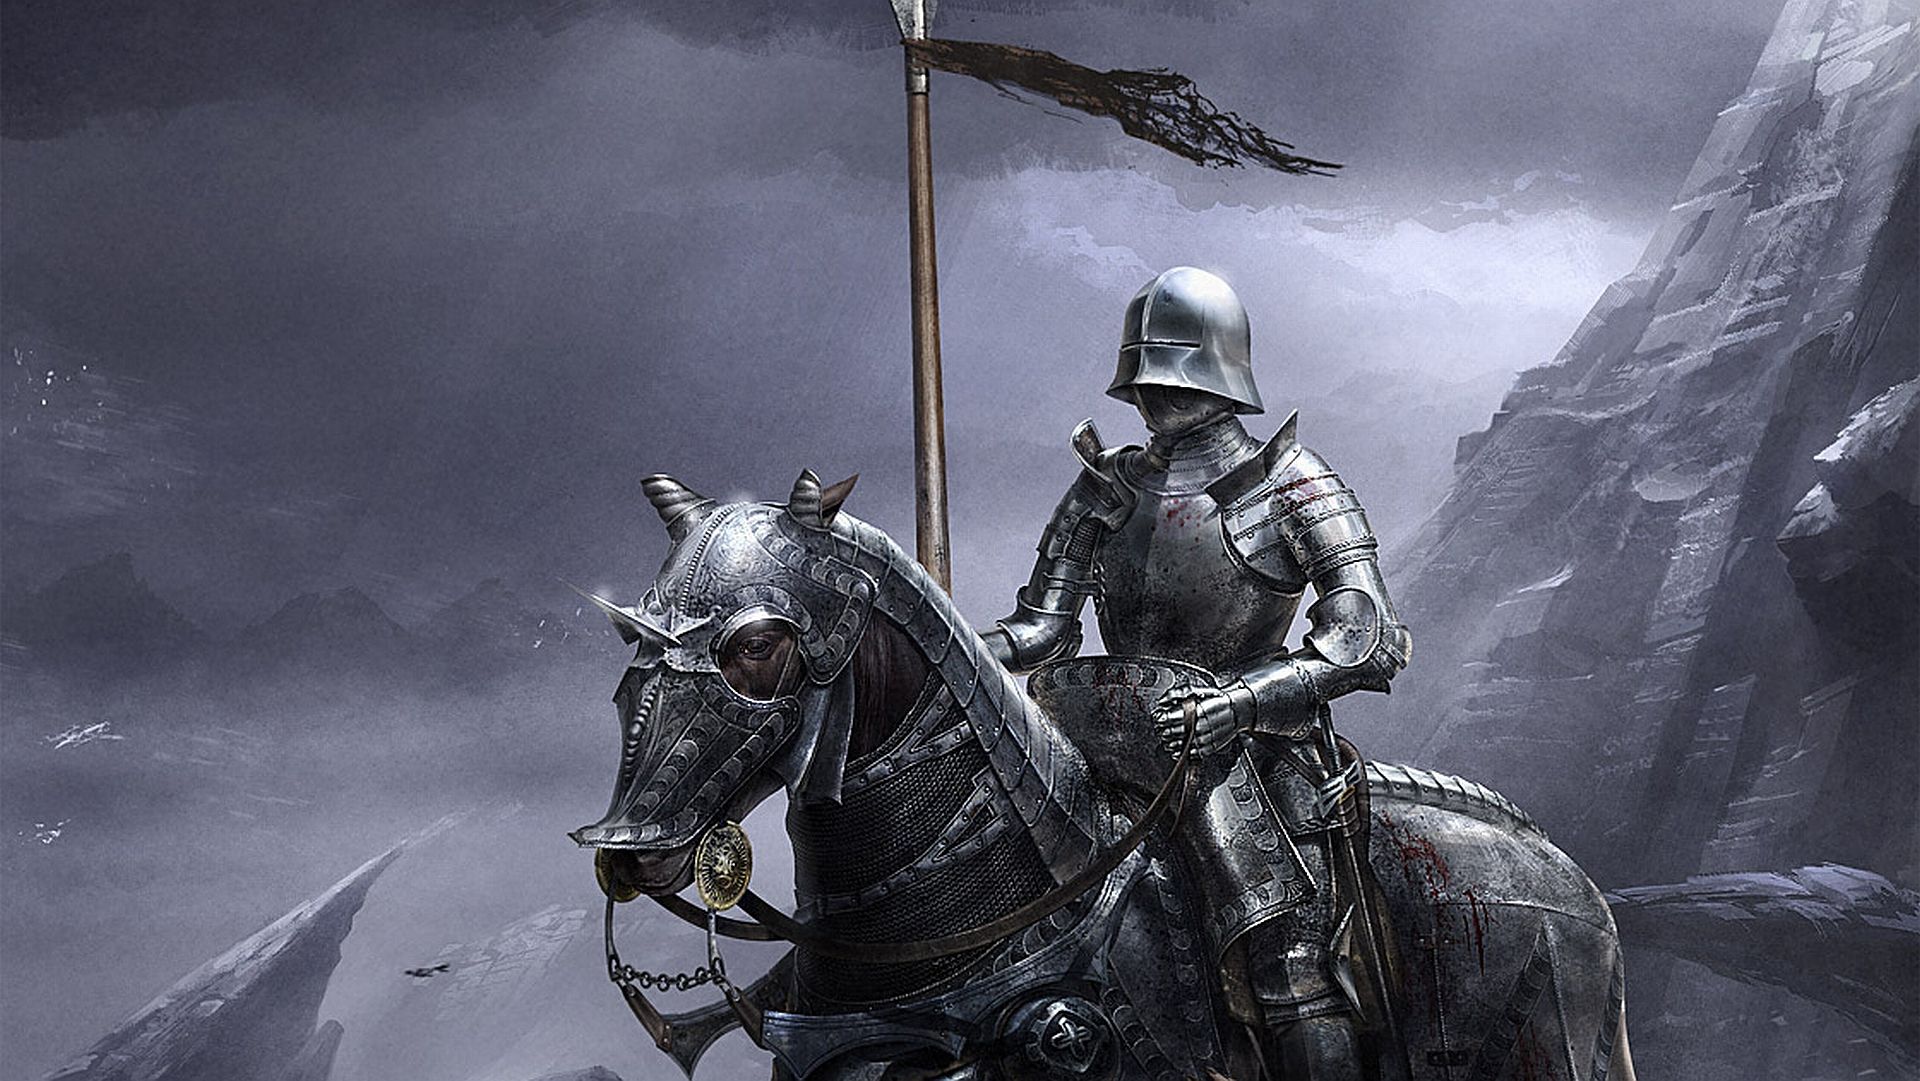 The Forgotten Knight Fantasy Art. Fantasy Wallpaper. Knight, Medieval knight, Dark knight wallpaper